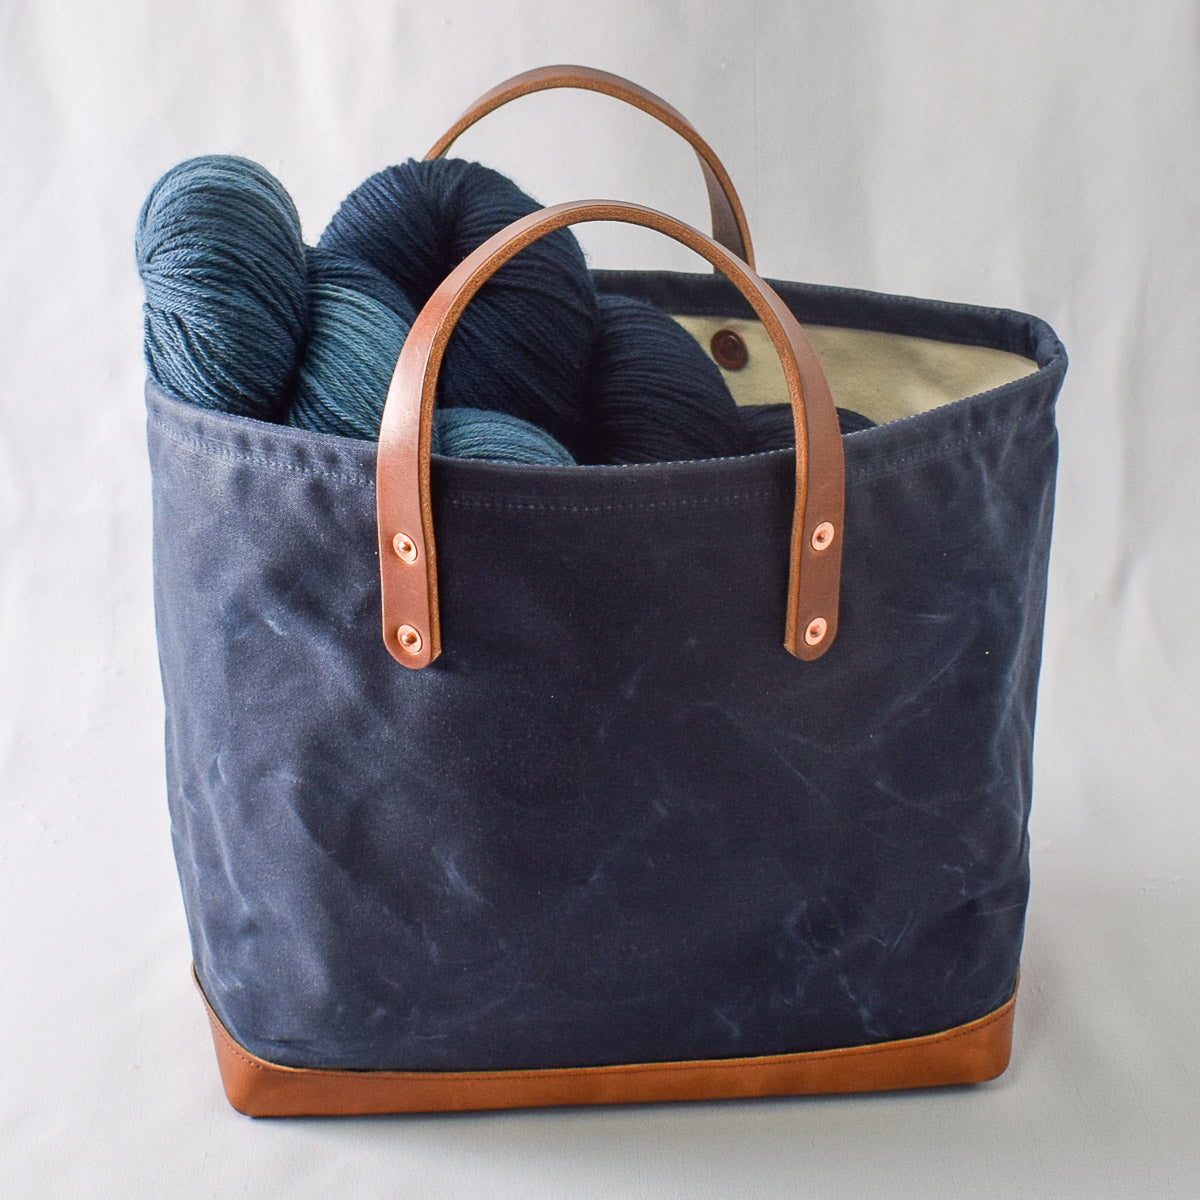 Navy Blue Bag No. 4 - The Market Bag